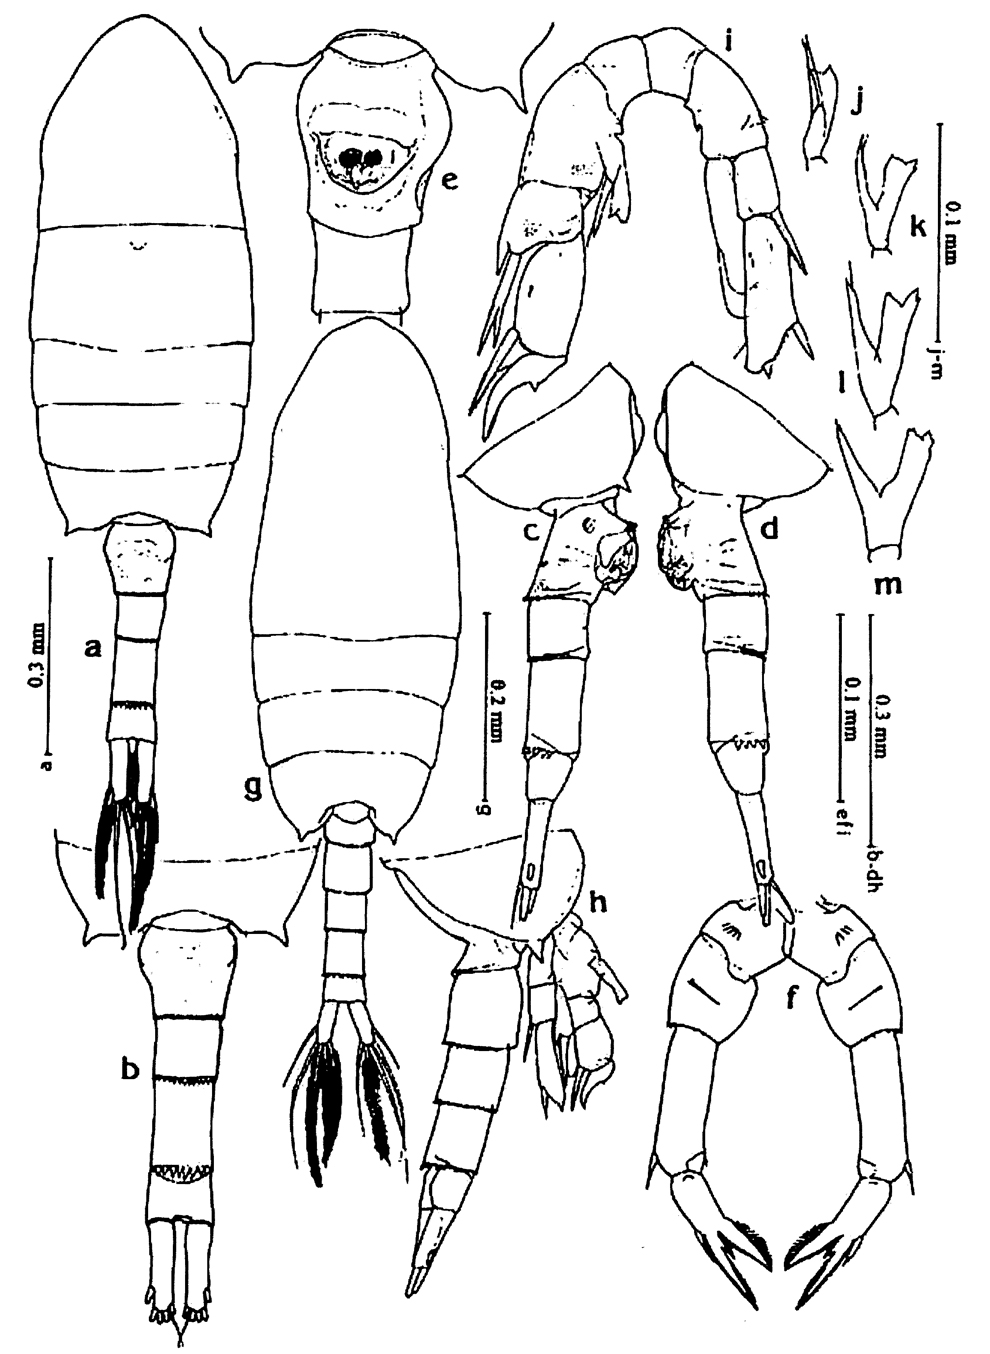 Espce Pseudodiaptomus philippinensis - Planche 2 de figures morphologiques